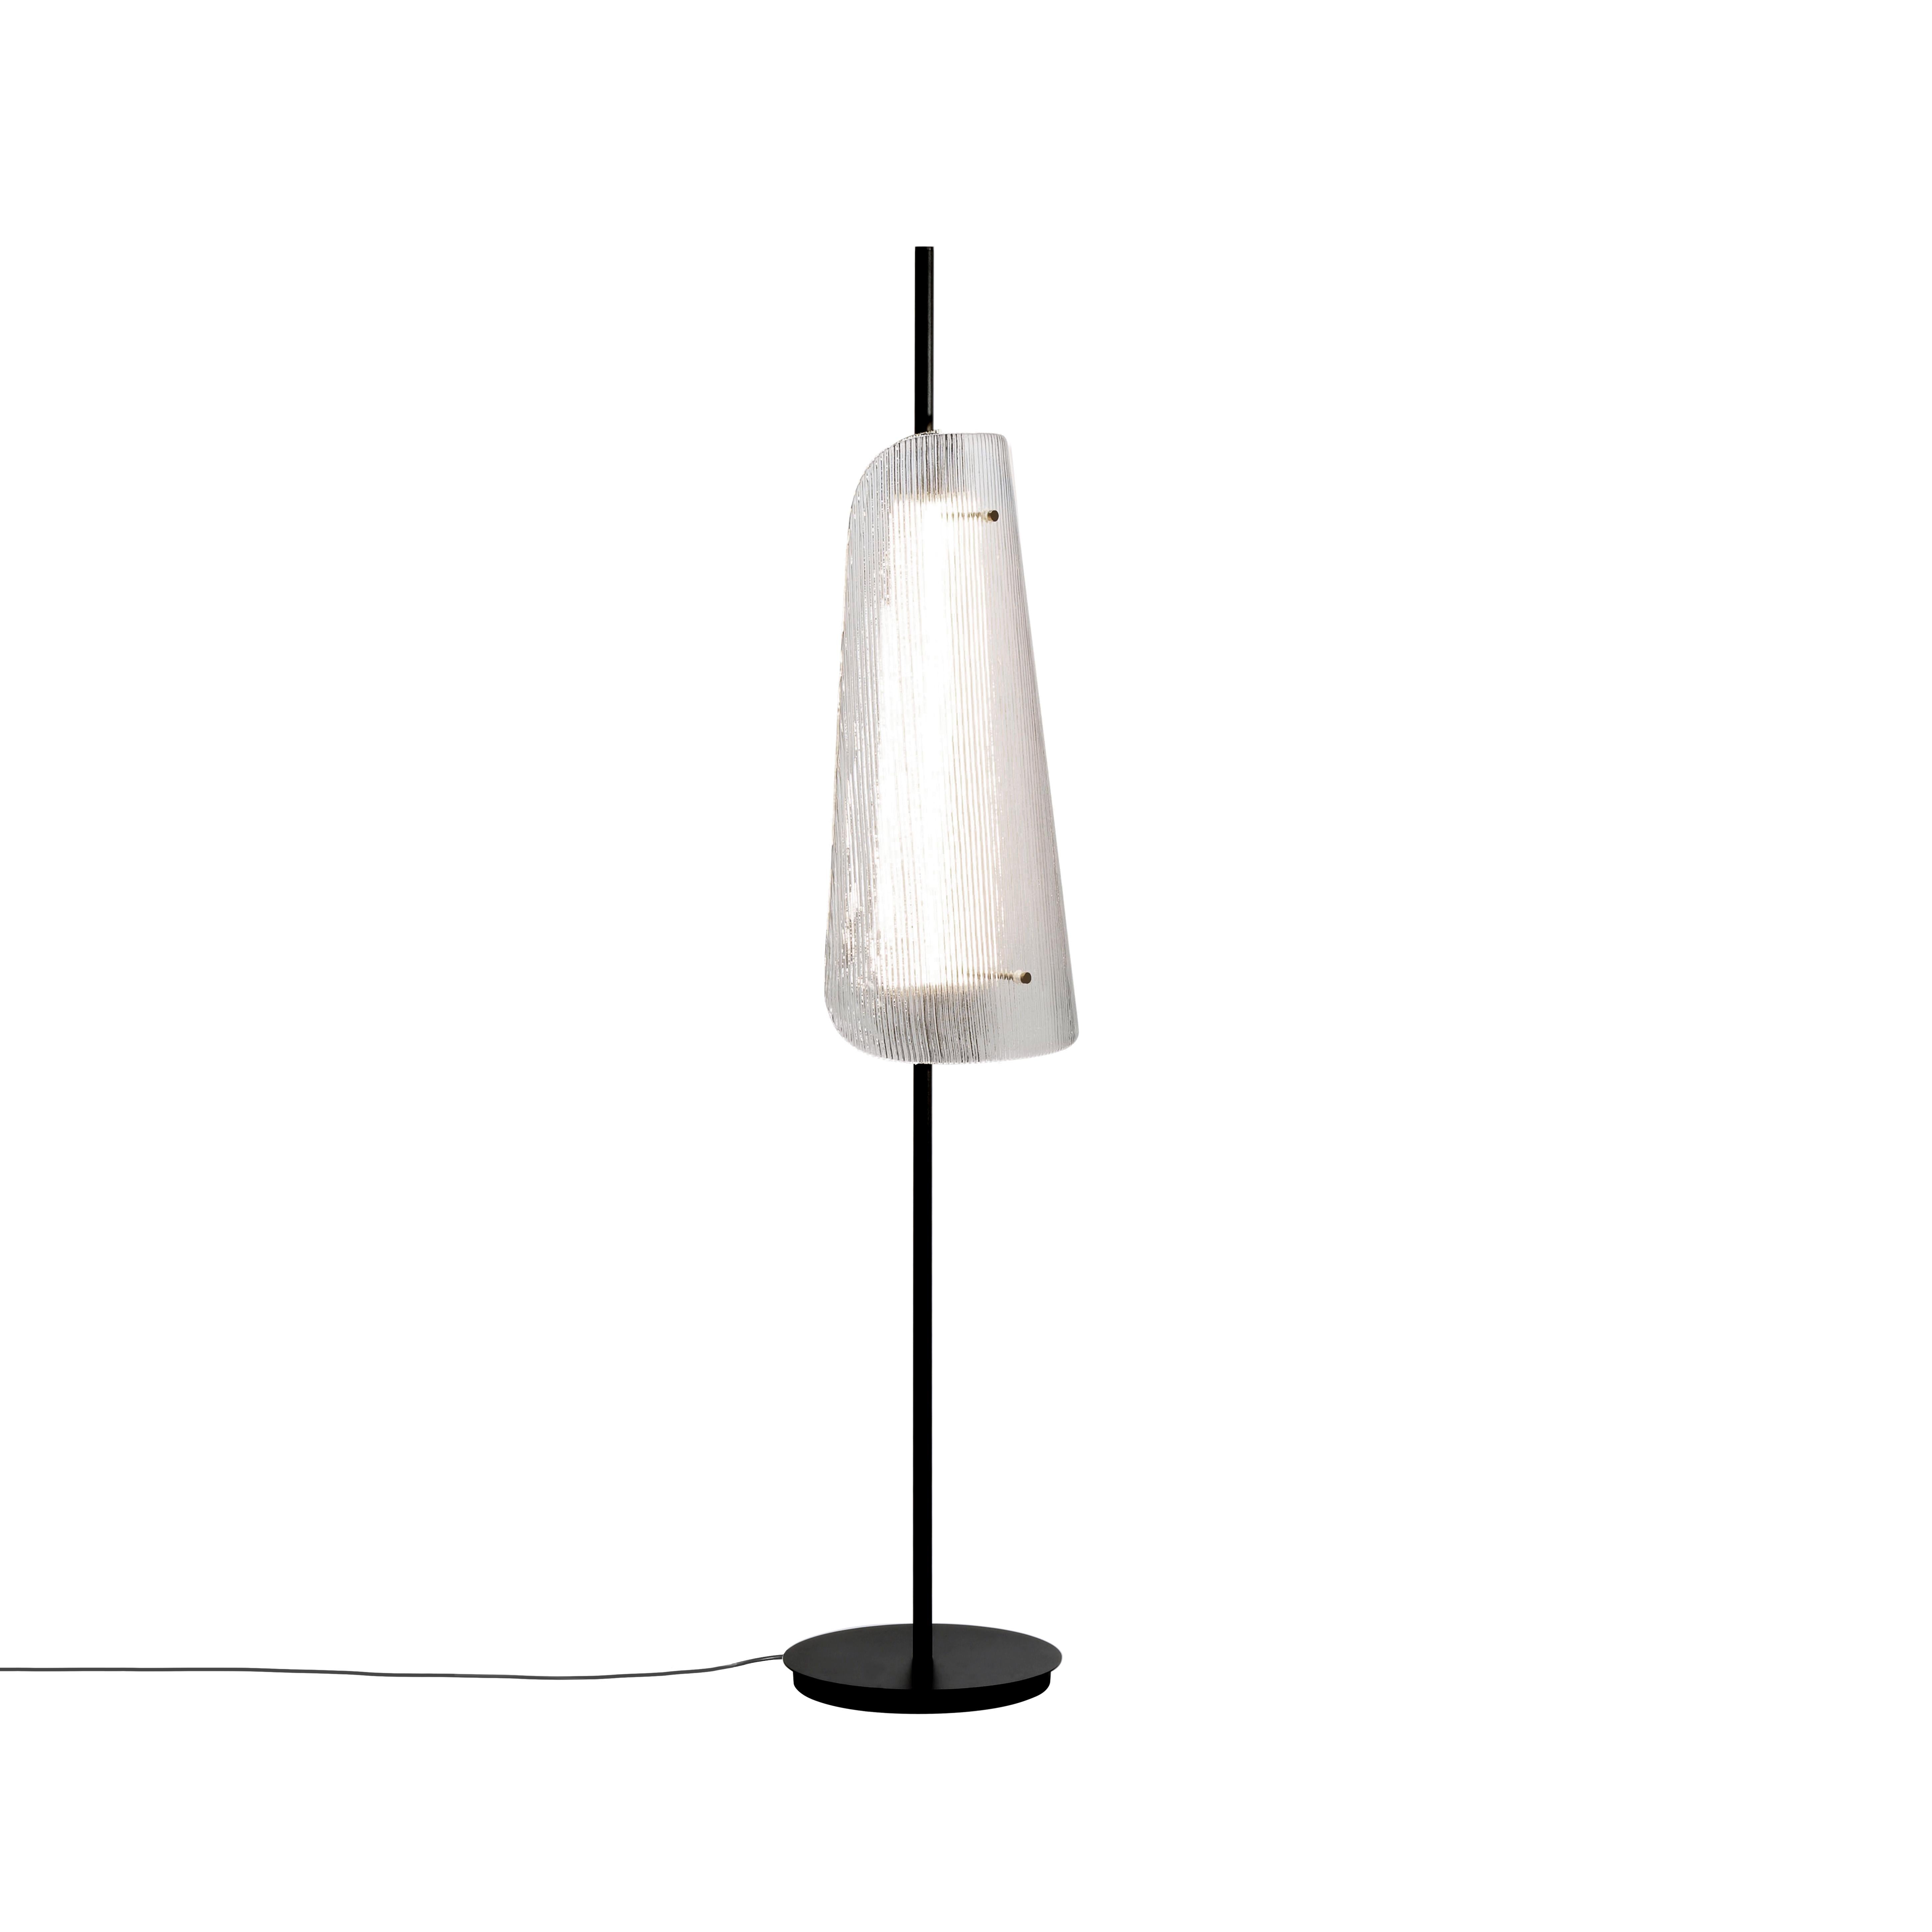 German Bent One Smoky Grey Black Floor Lamp by Pulpo